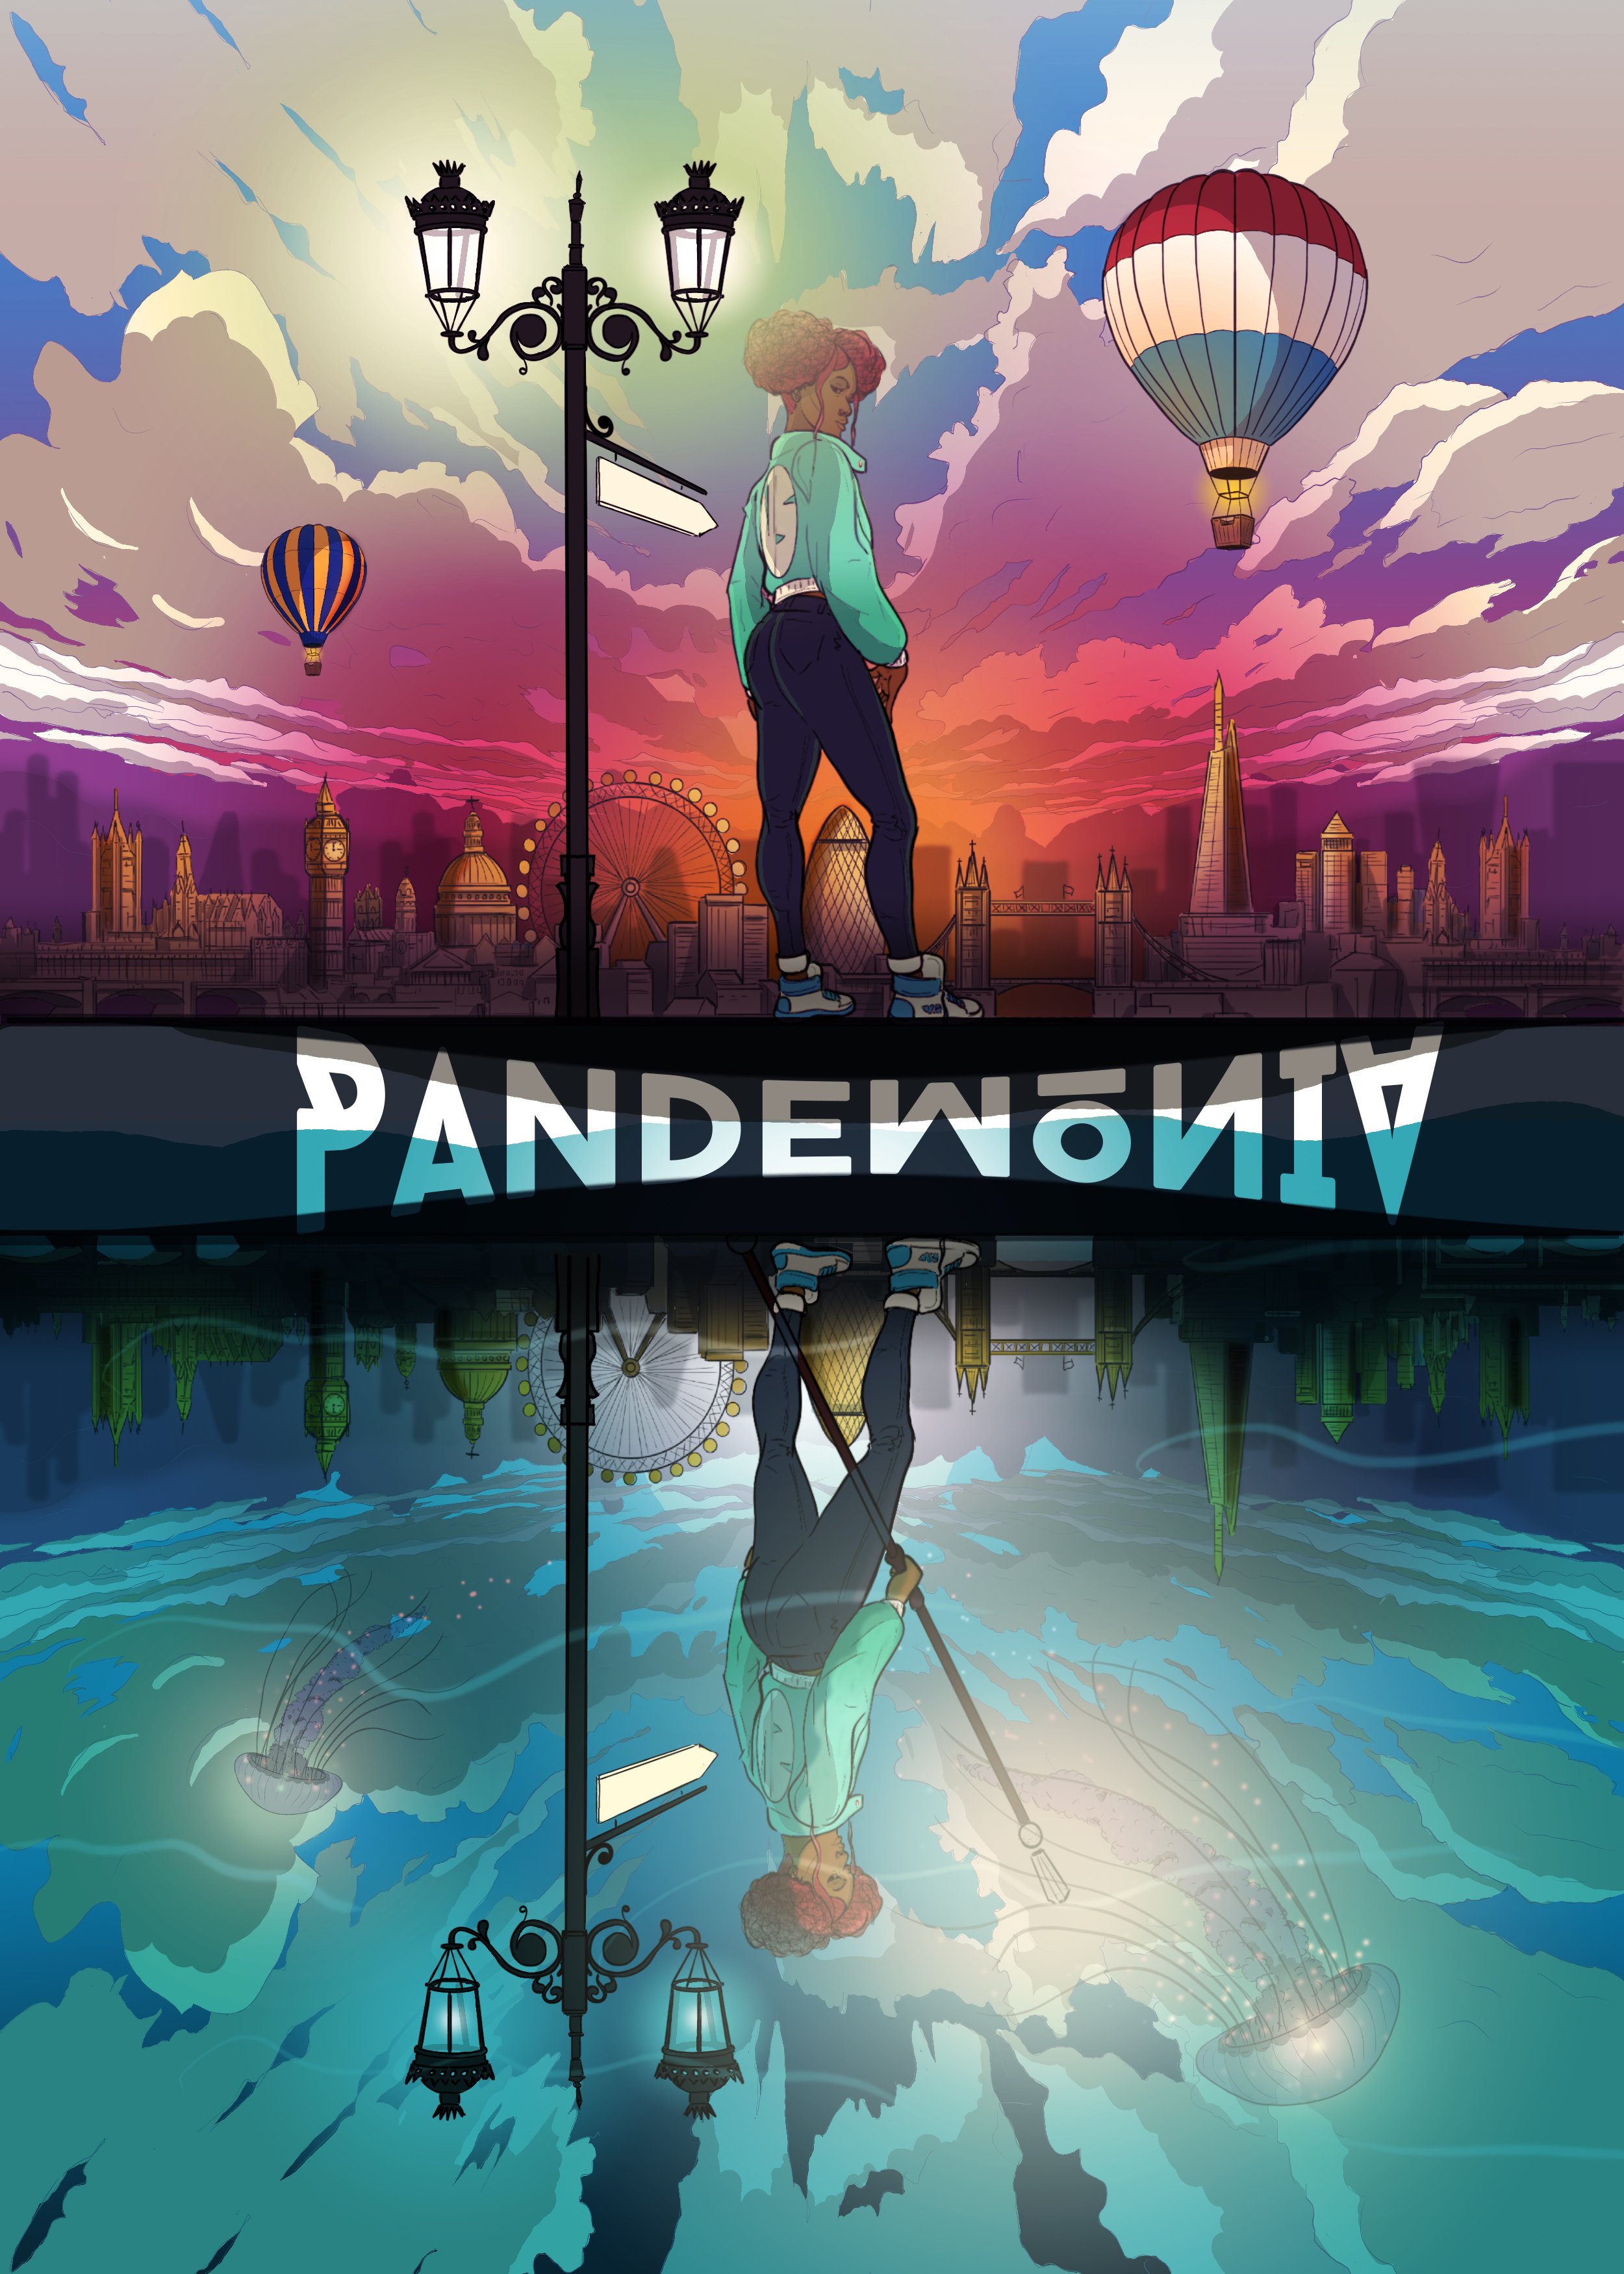 Pandemonia Cover n Title ALT WIP TEST 2.jpg